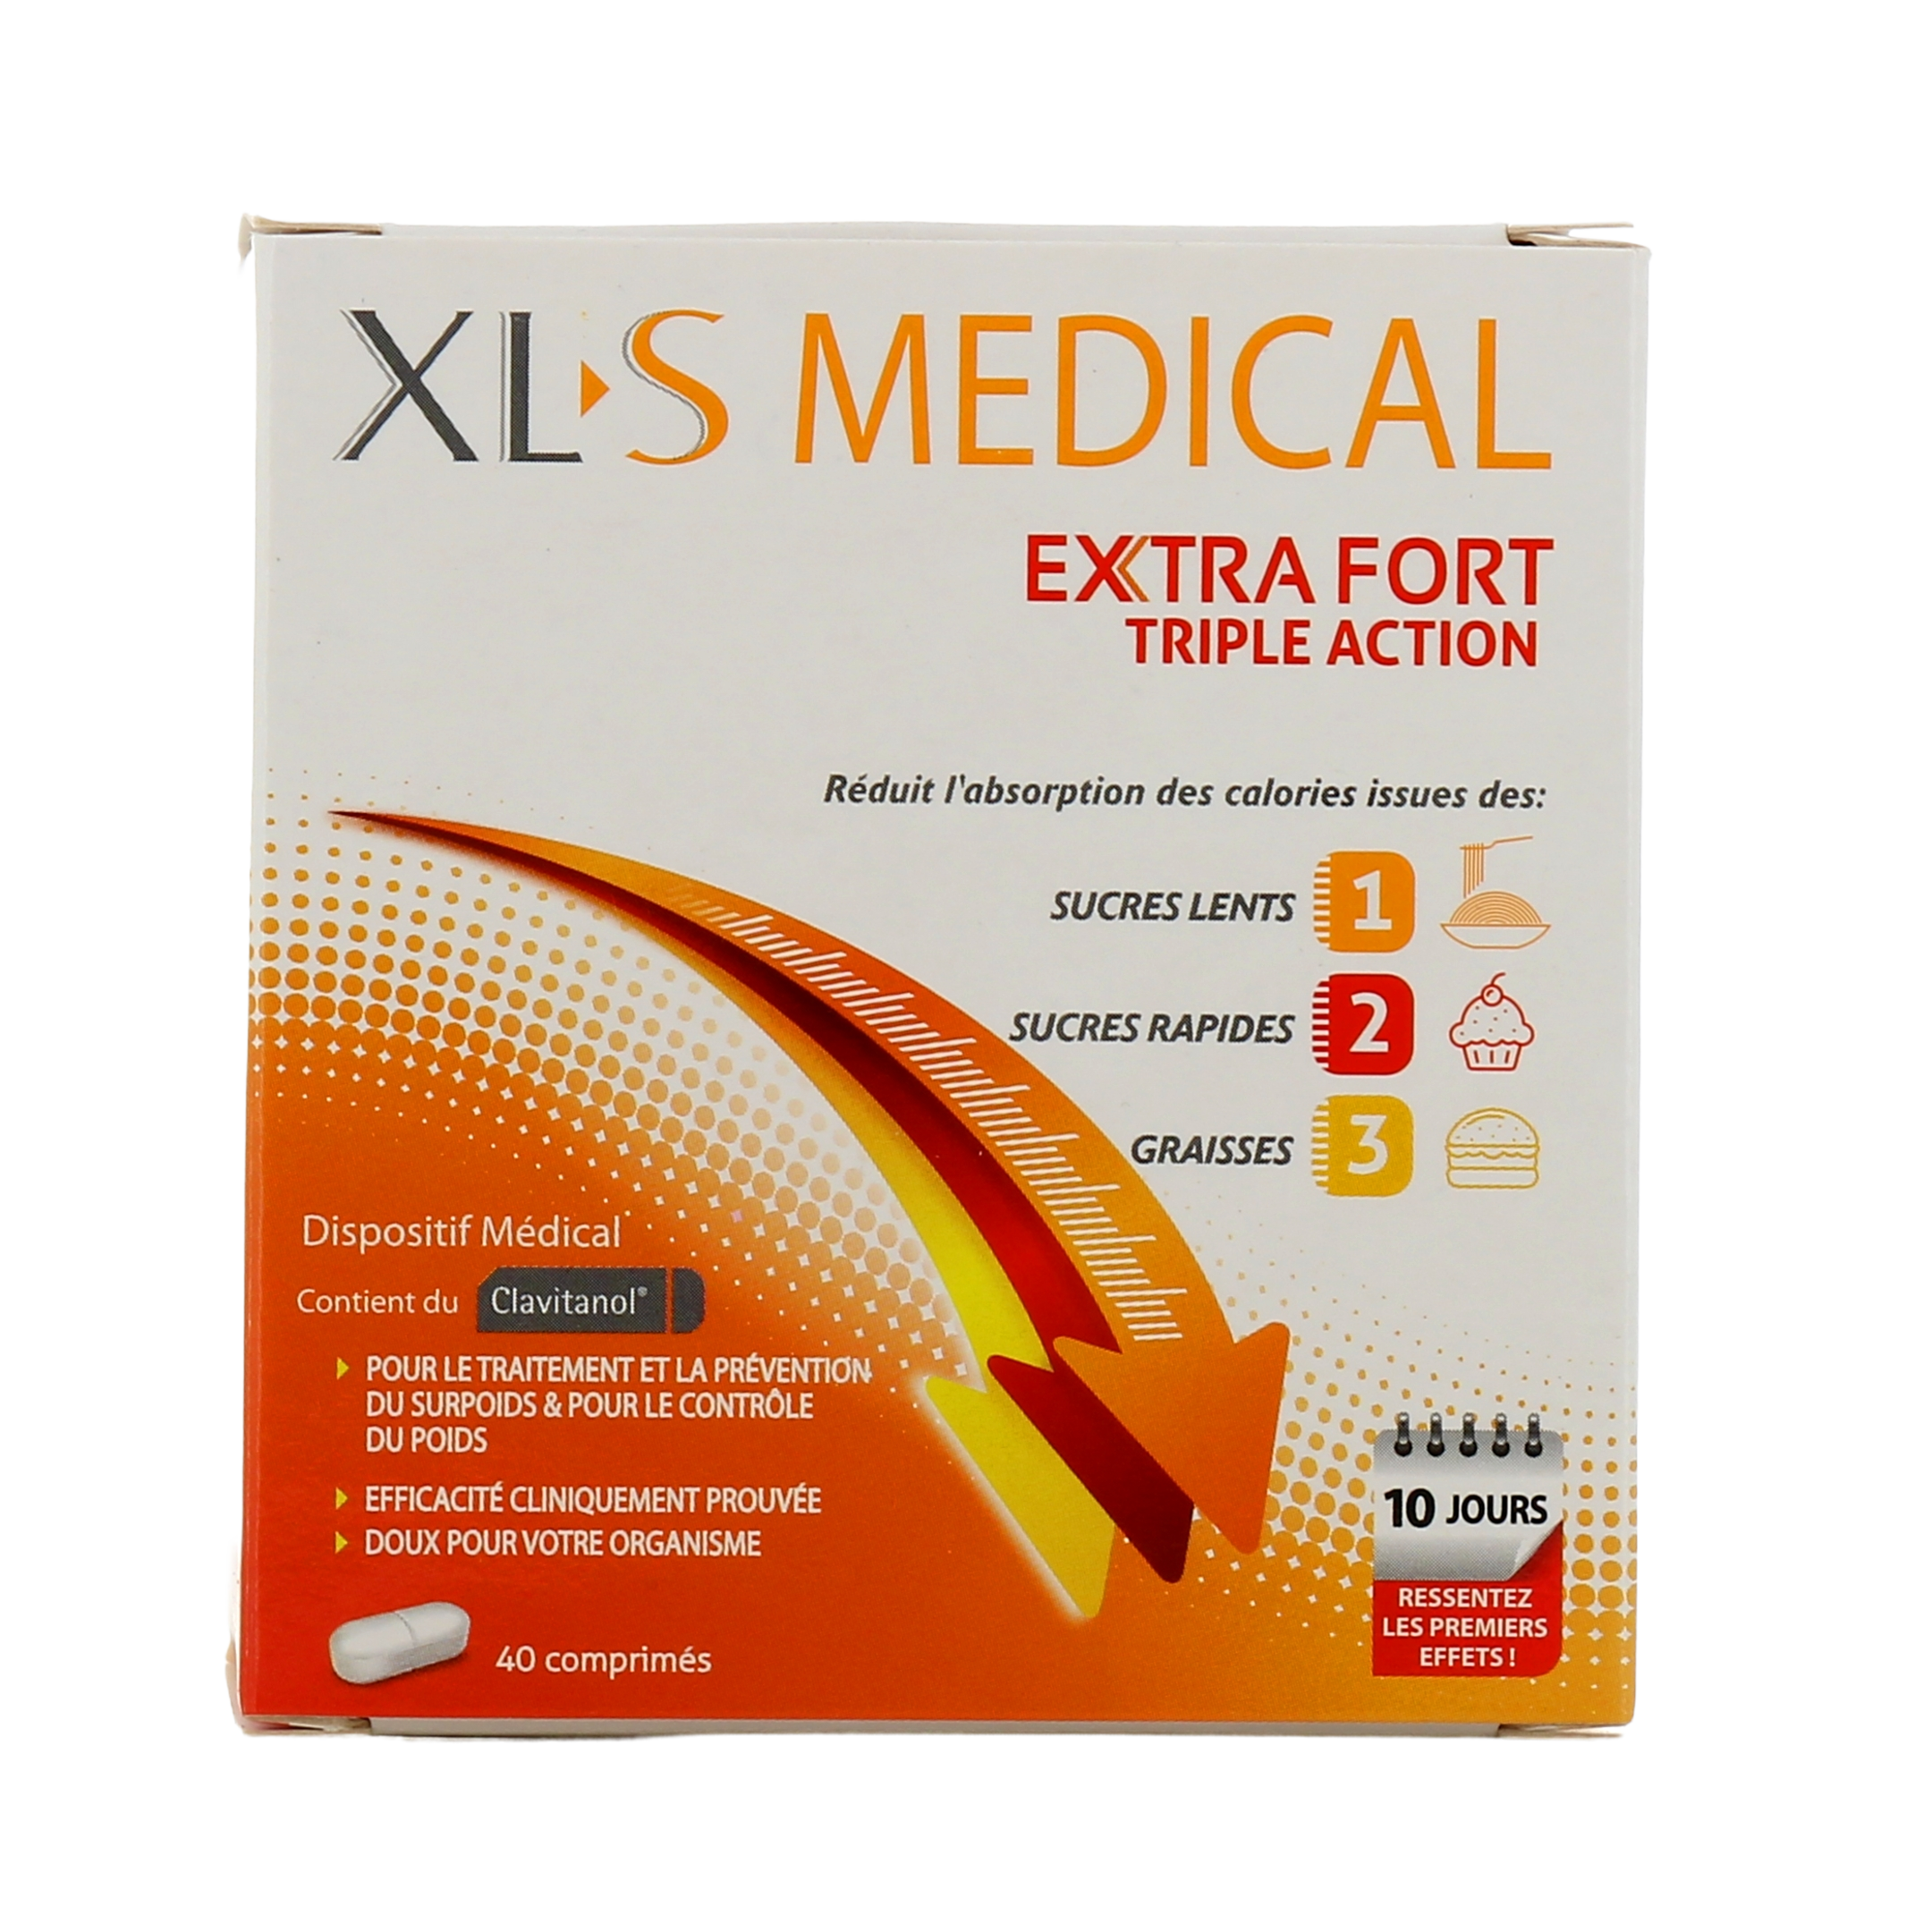 XLS Medical Extra Fort 40 comprimés